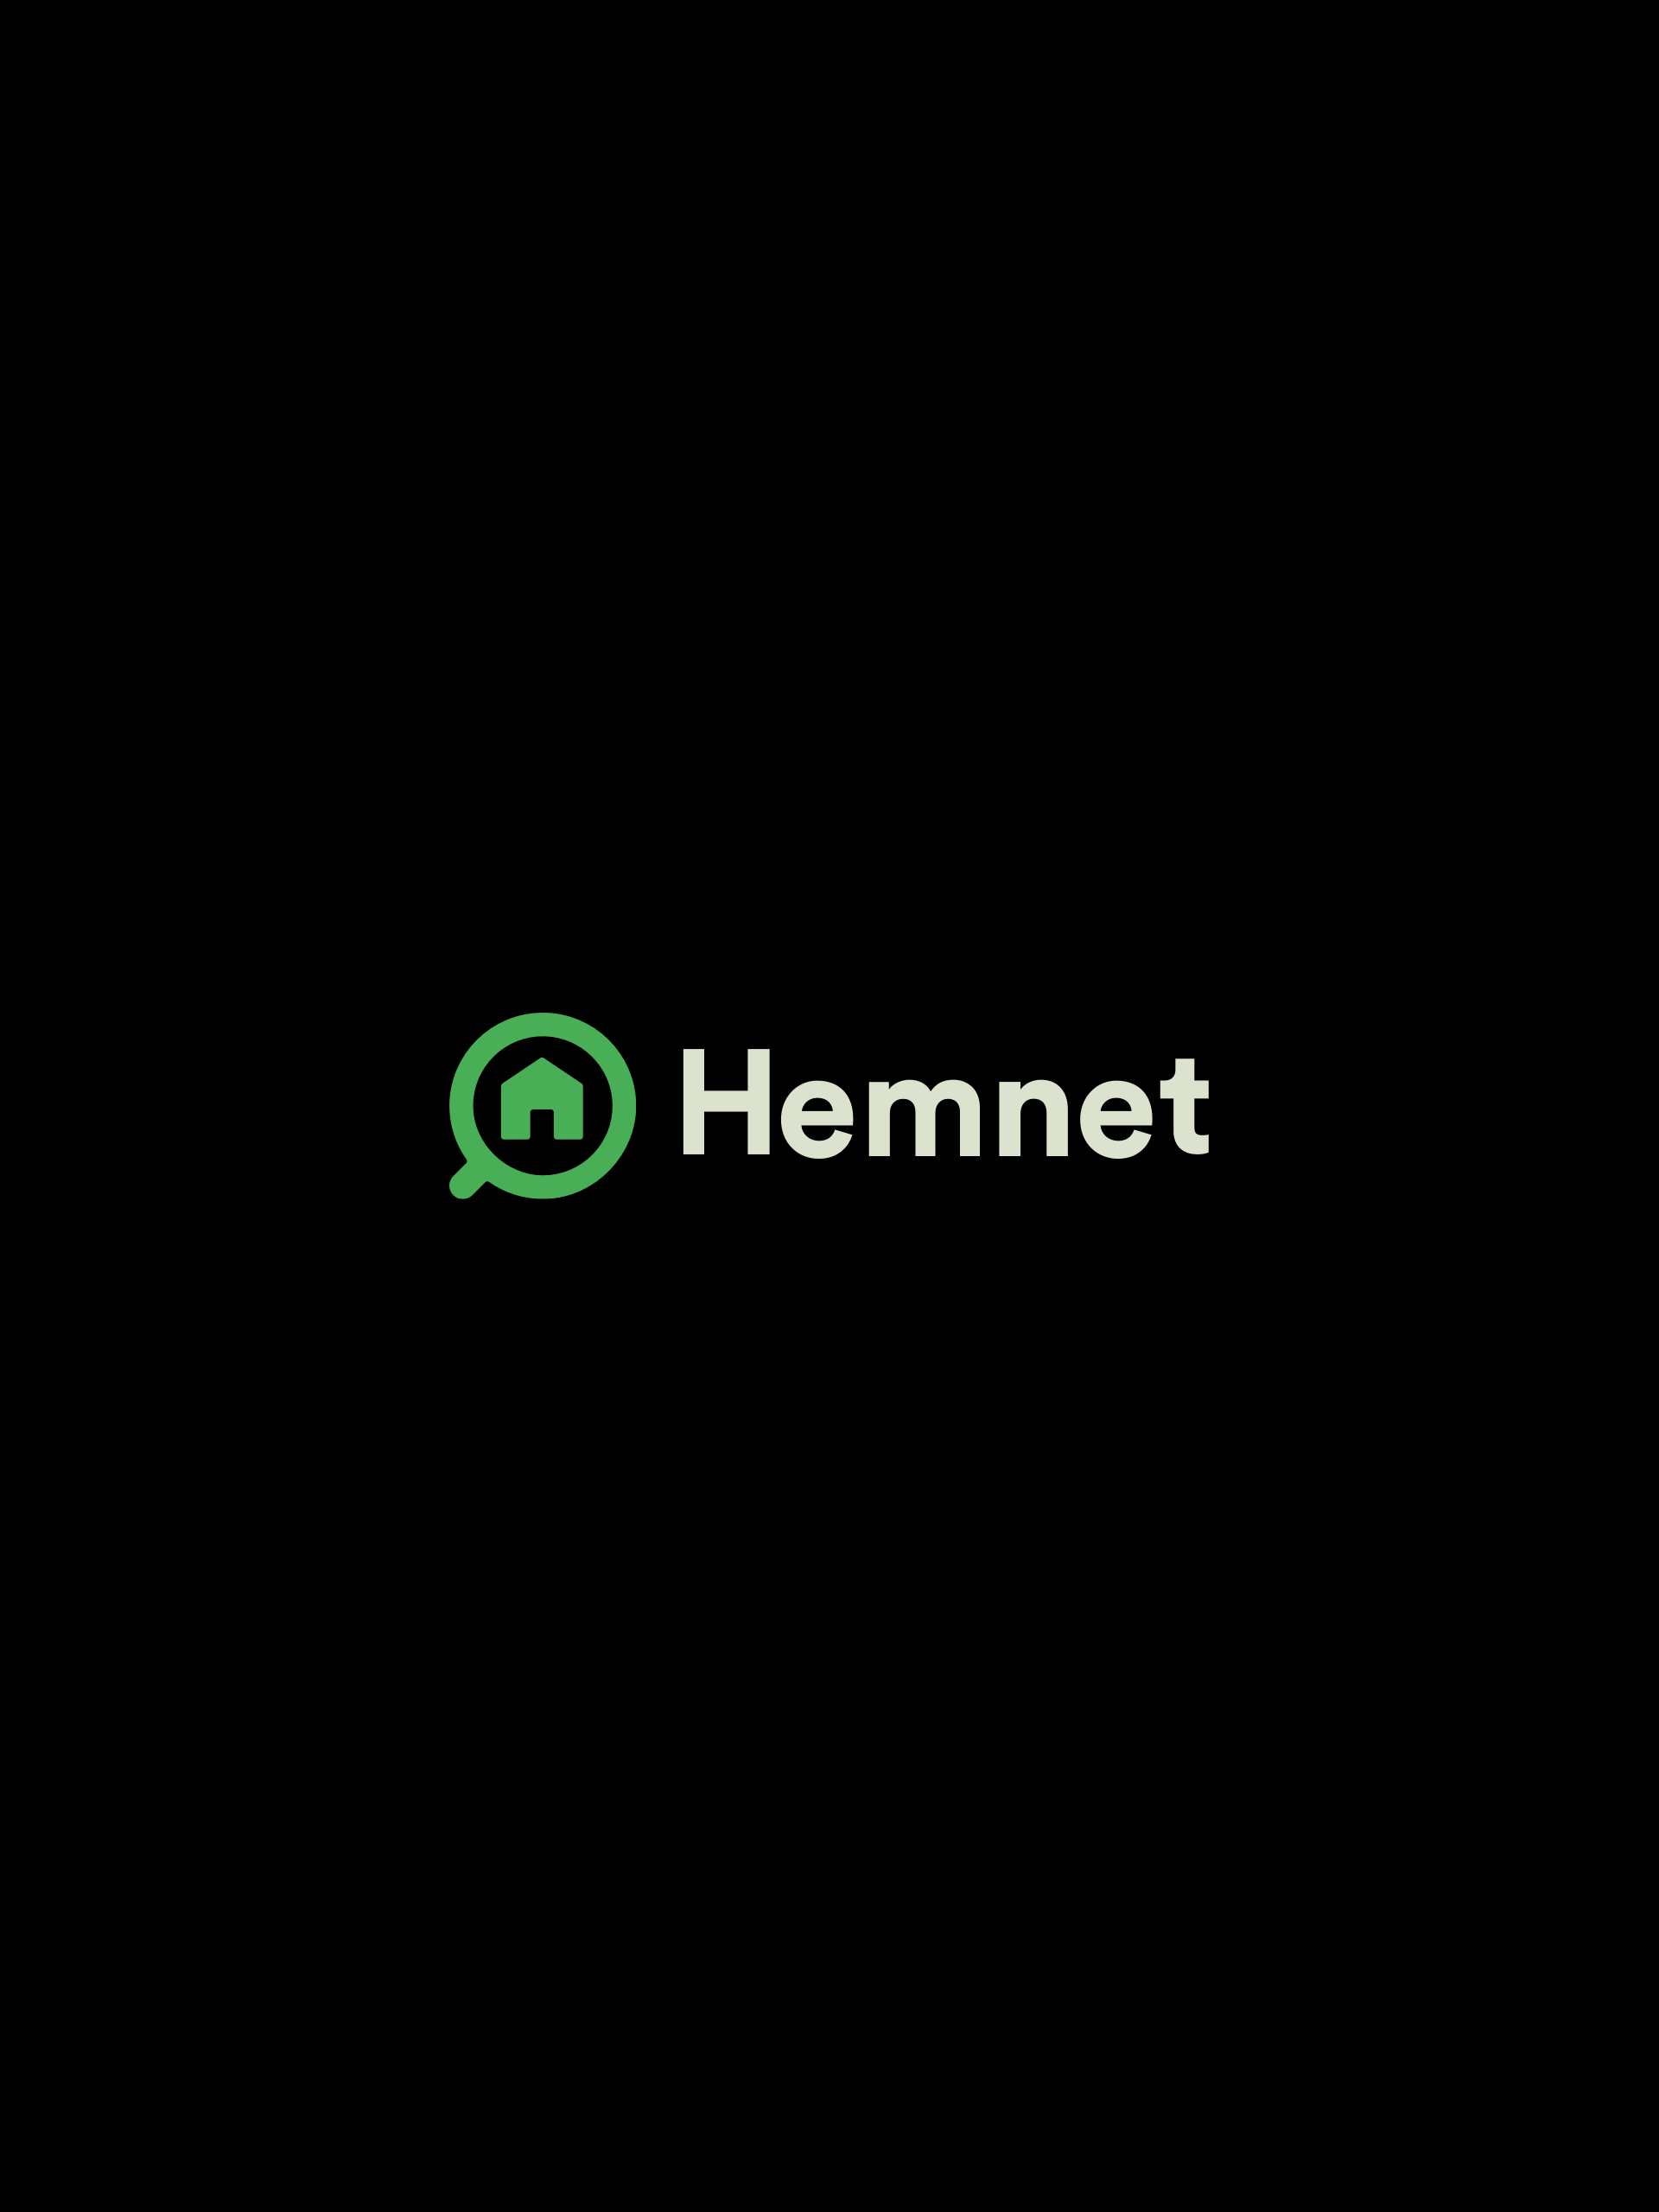 Hemnet-Logo-on-Black